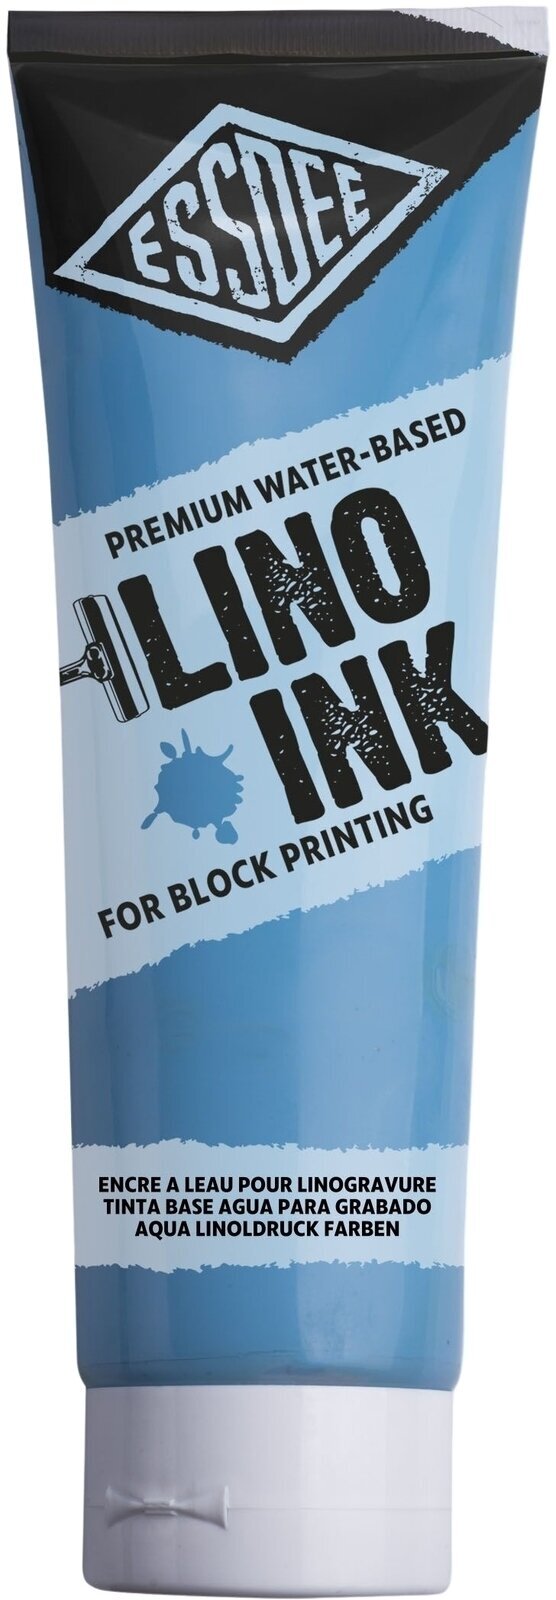 Verf voor linosnede Essdee Block Printing Ink Verf voor linosnede Sky Blue 300 ml